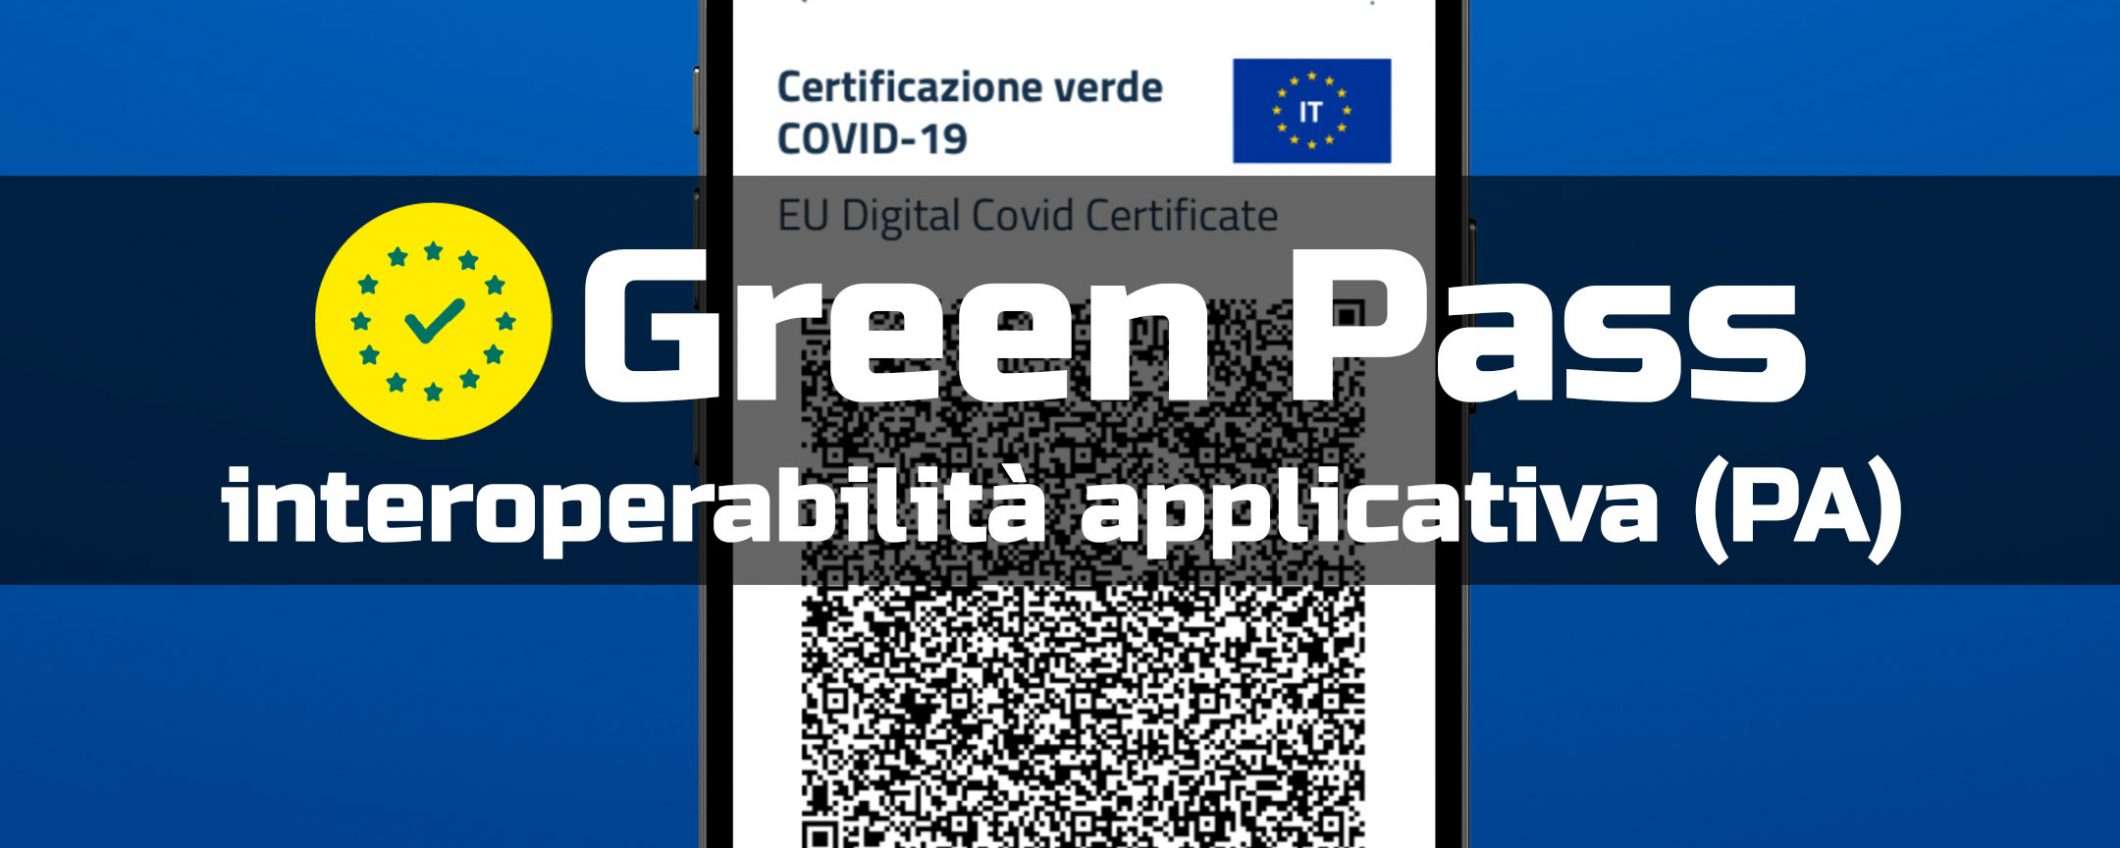 Green Pass nelle PA: interoperabilità applicativa